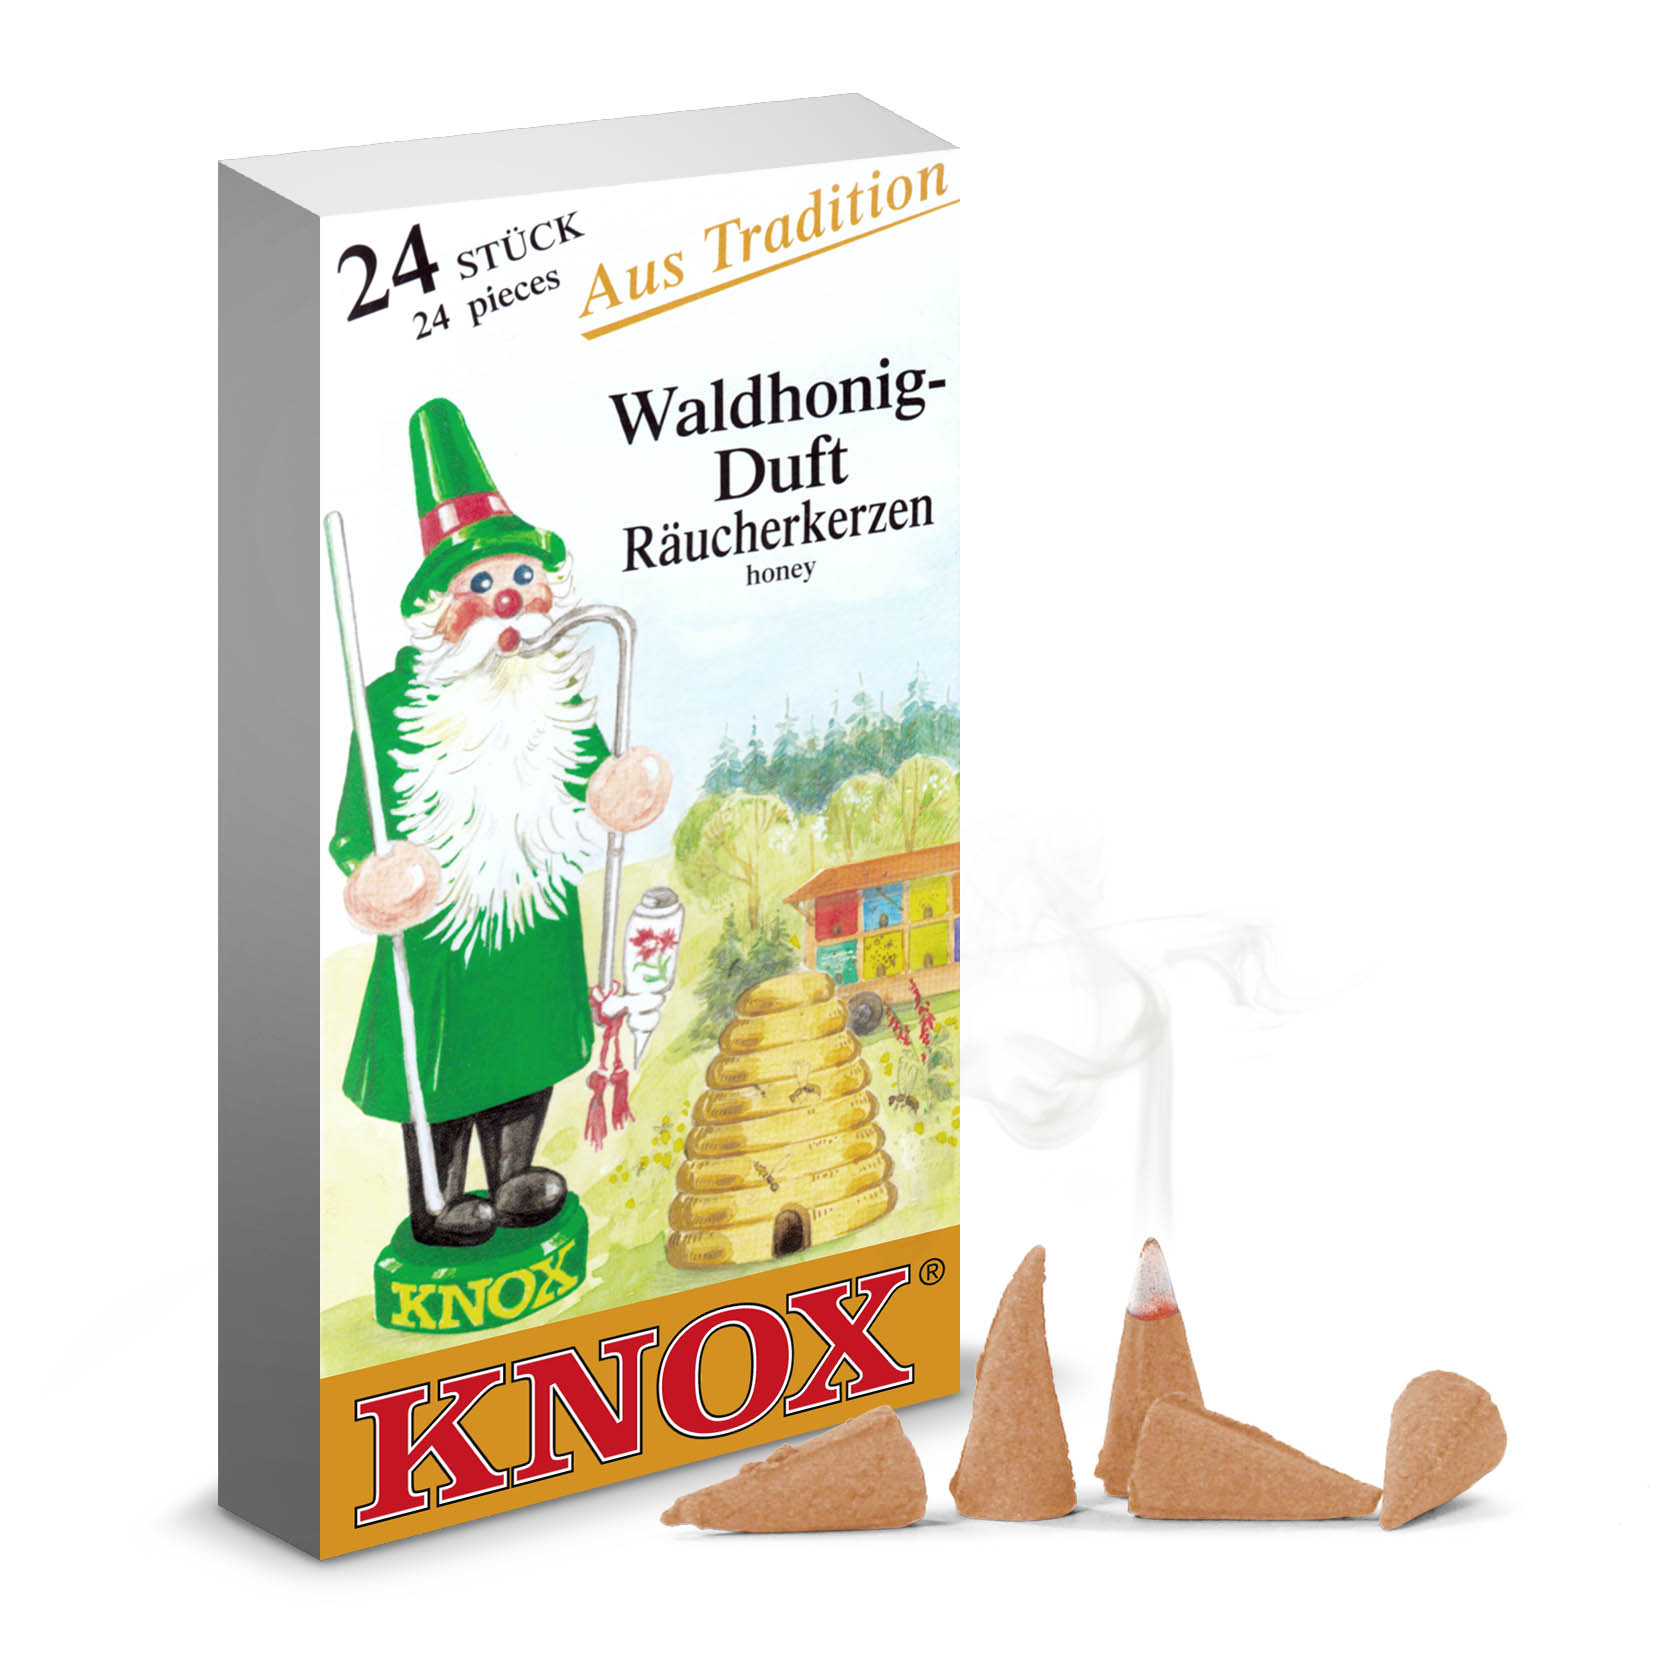 KNOX Räucherkerzen Waldhonig (24) im Dregeno Online Shop günstig kaufen